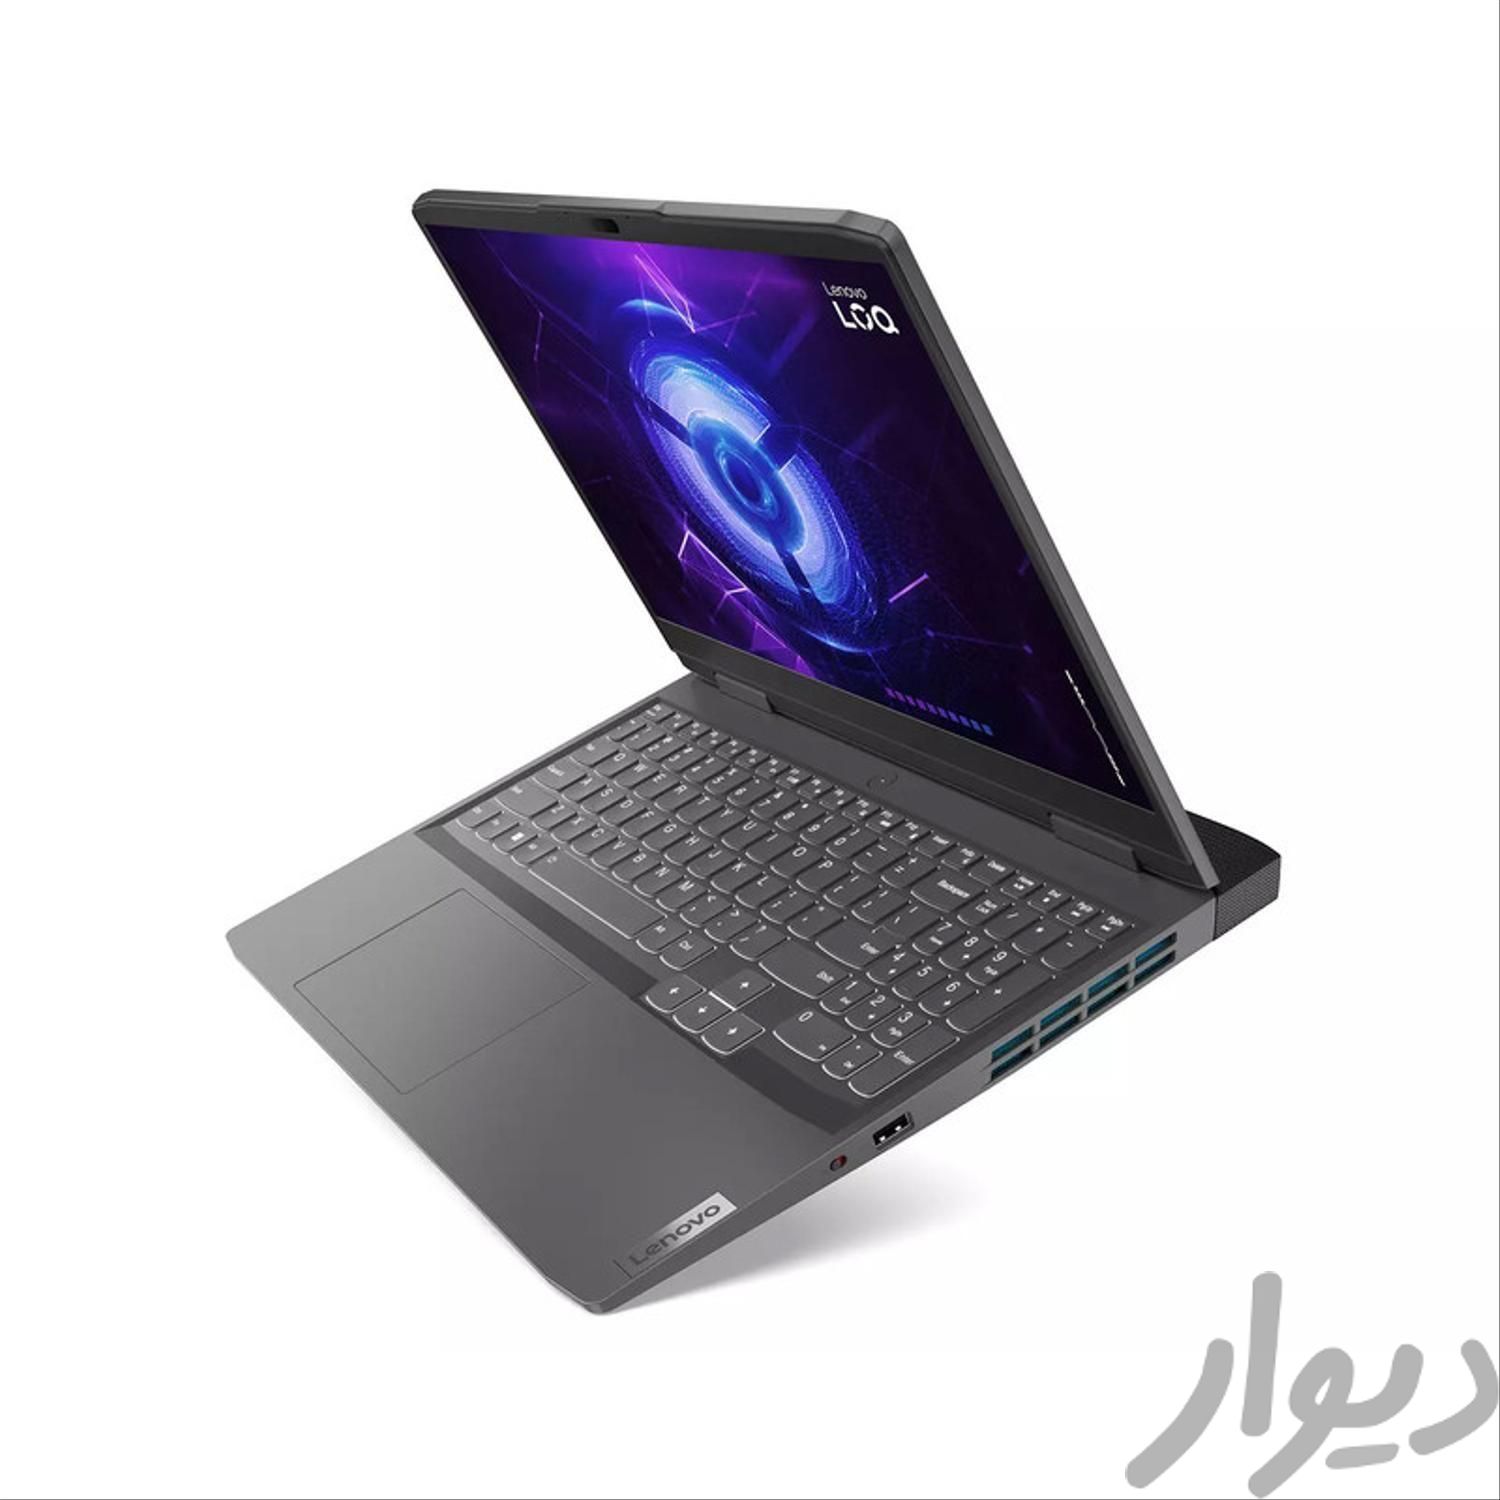 لپ تاپ لنوو LOQ-A|رایانه همراه|اصفهان, خلجا|دیوار